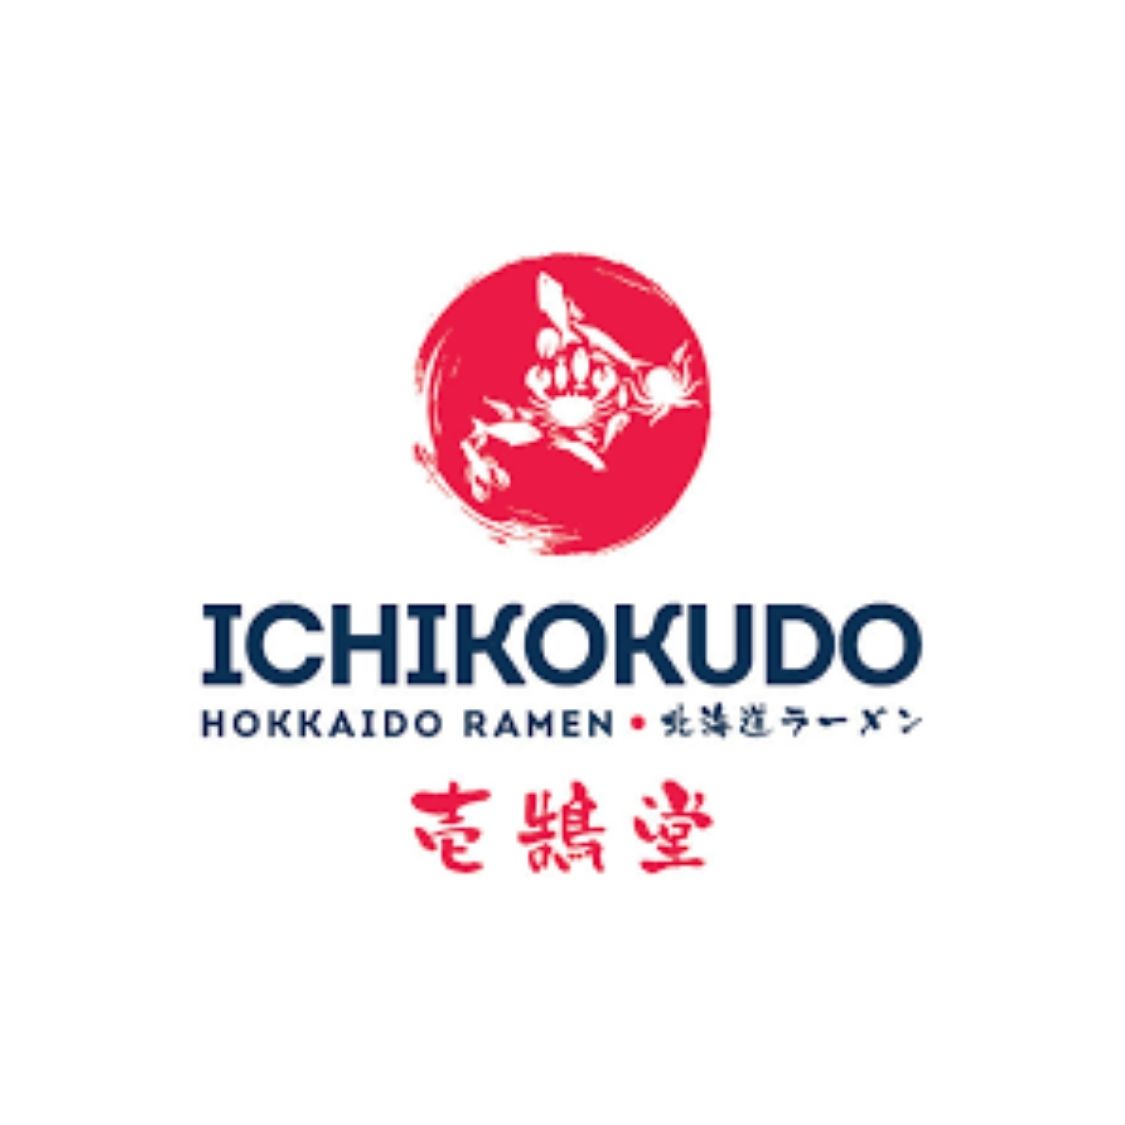 Ichikokudo Logo.jpg